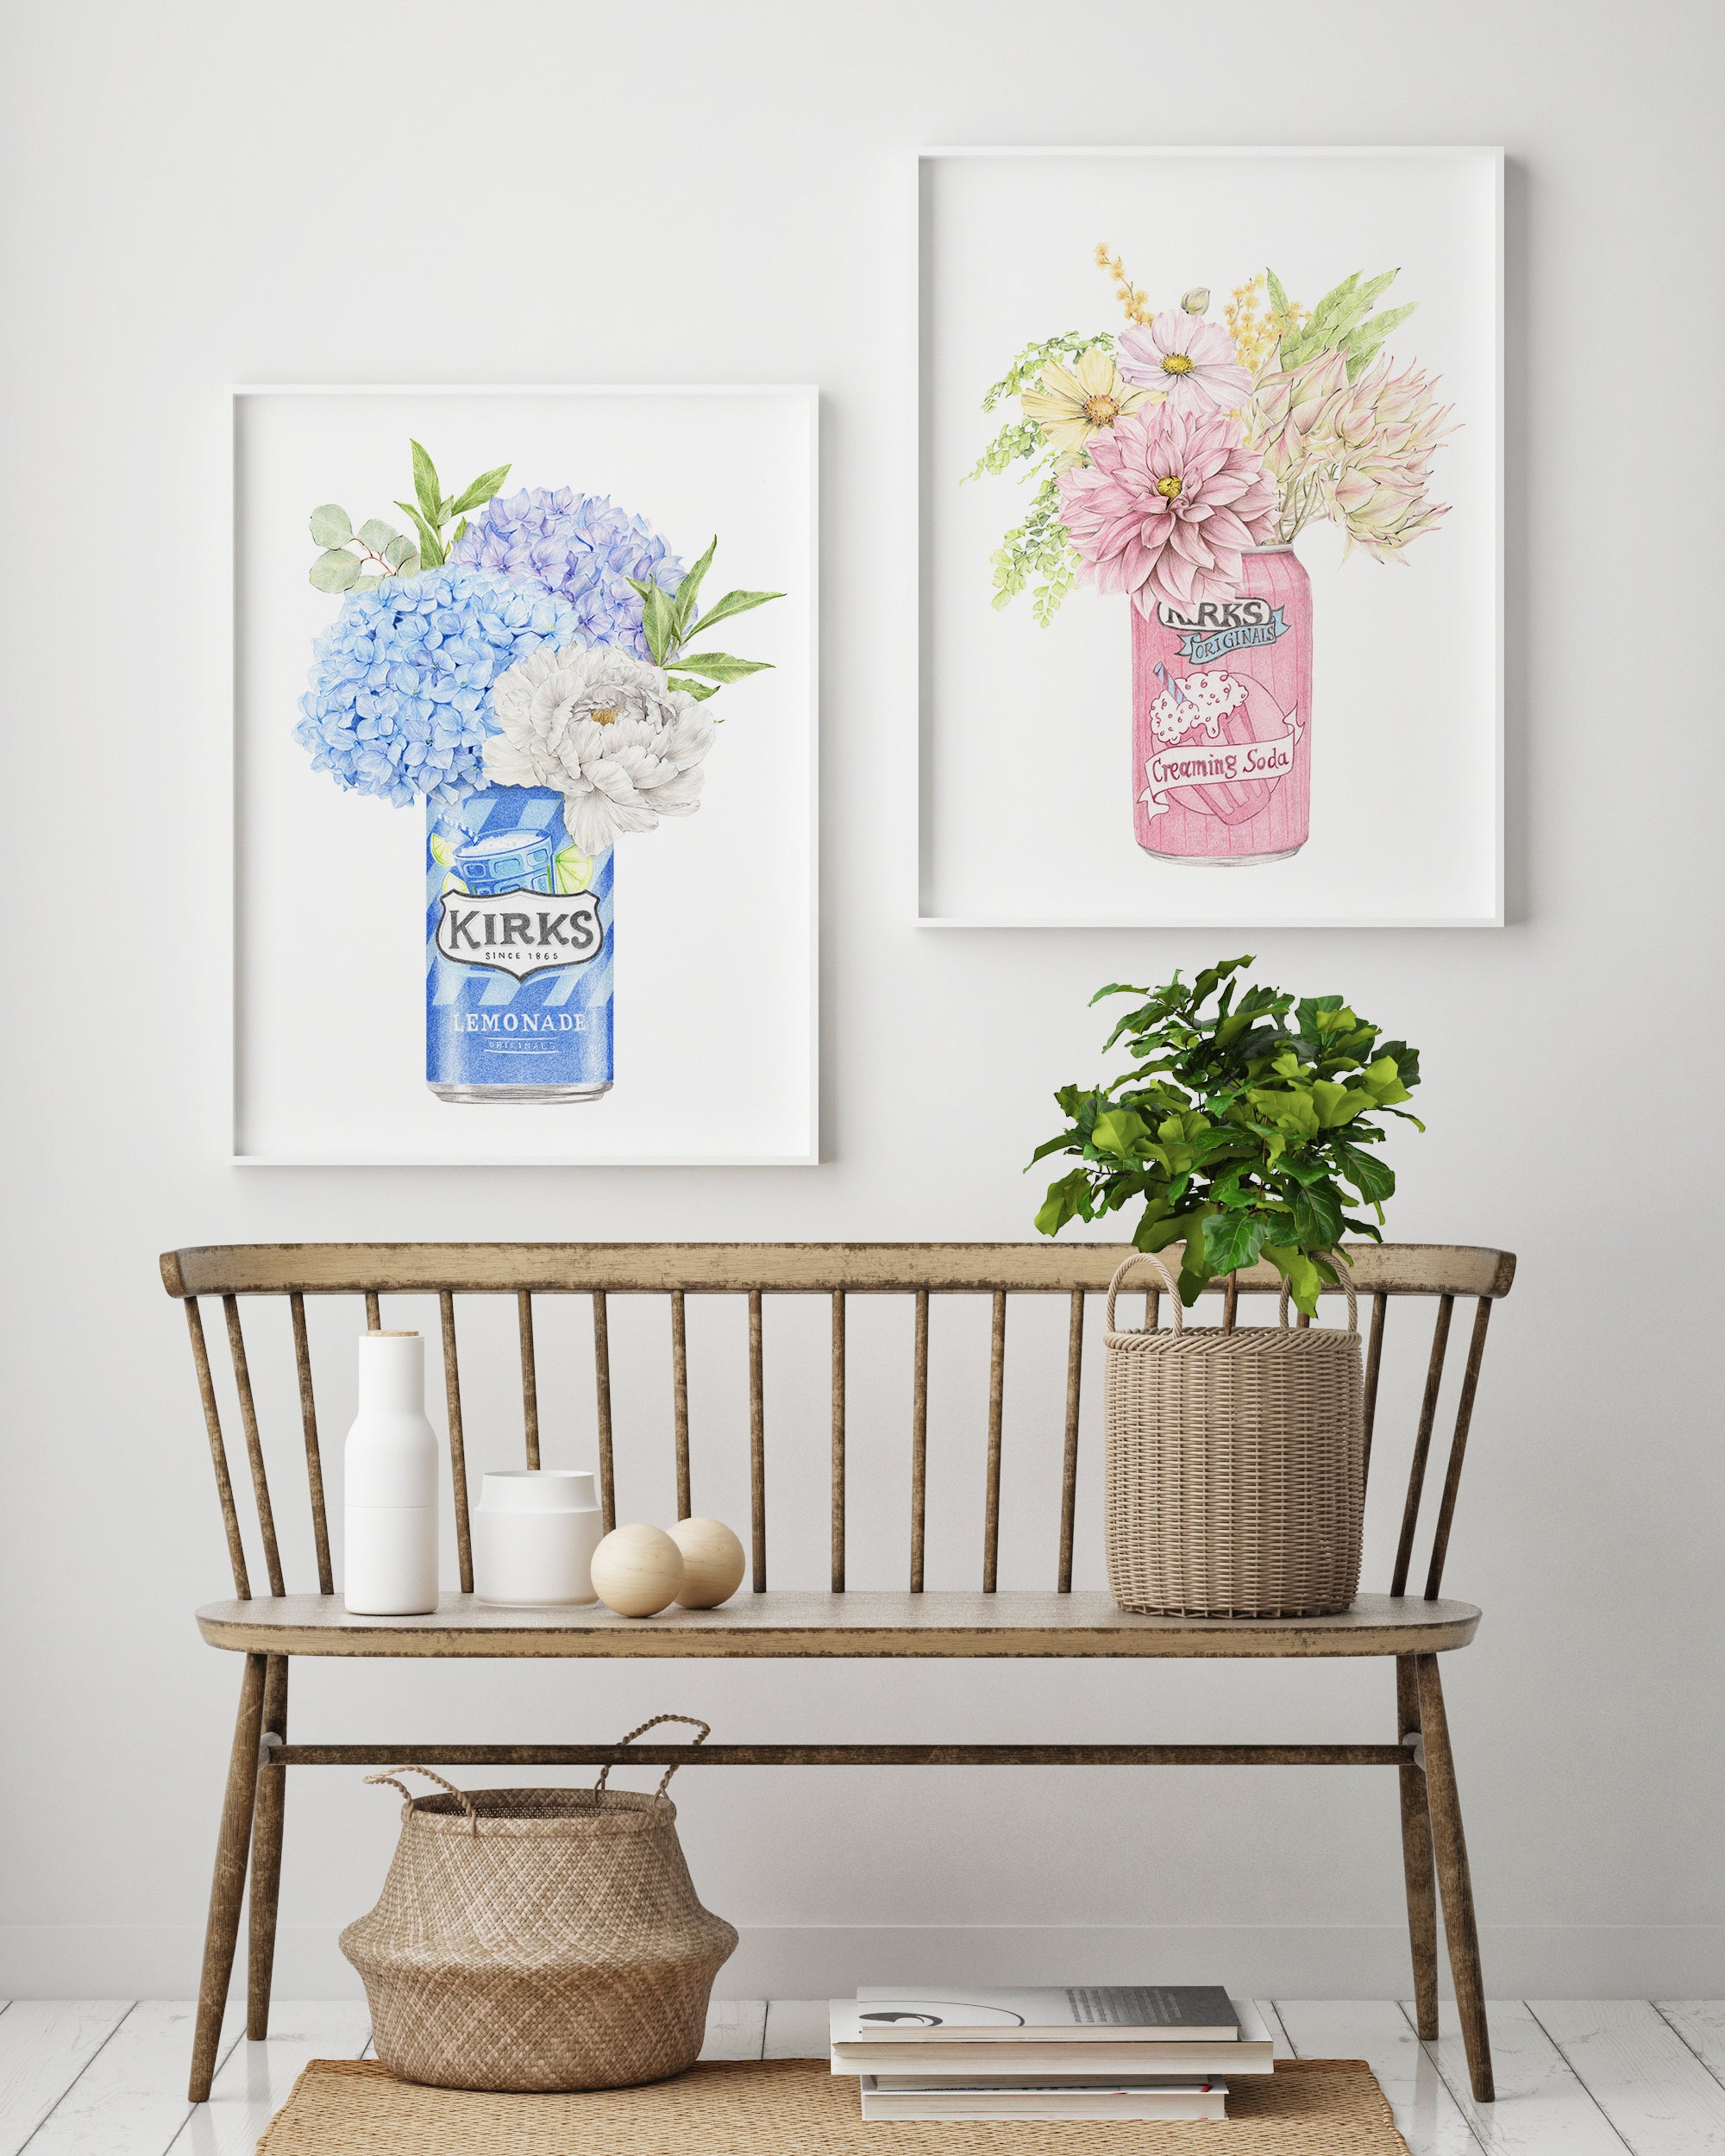 Kirks soft drinks botanical art prints for the Australian home